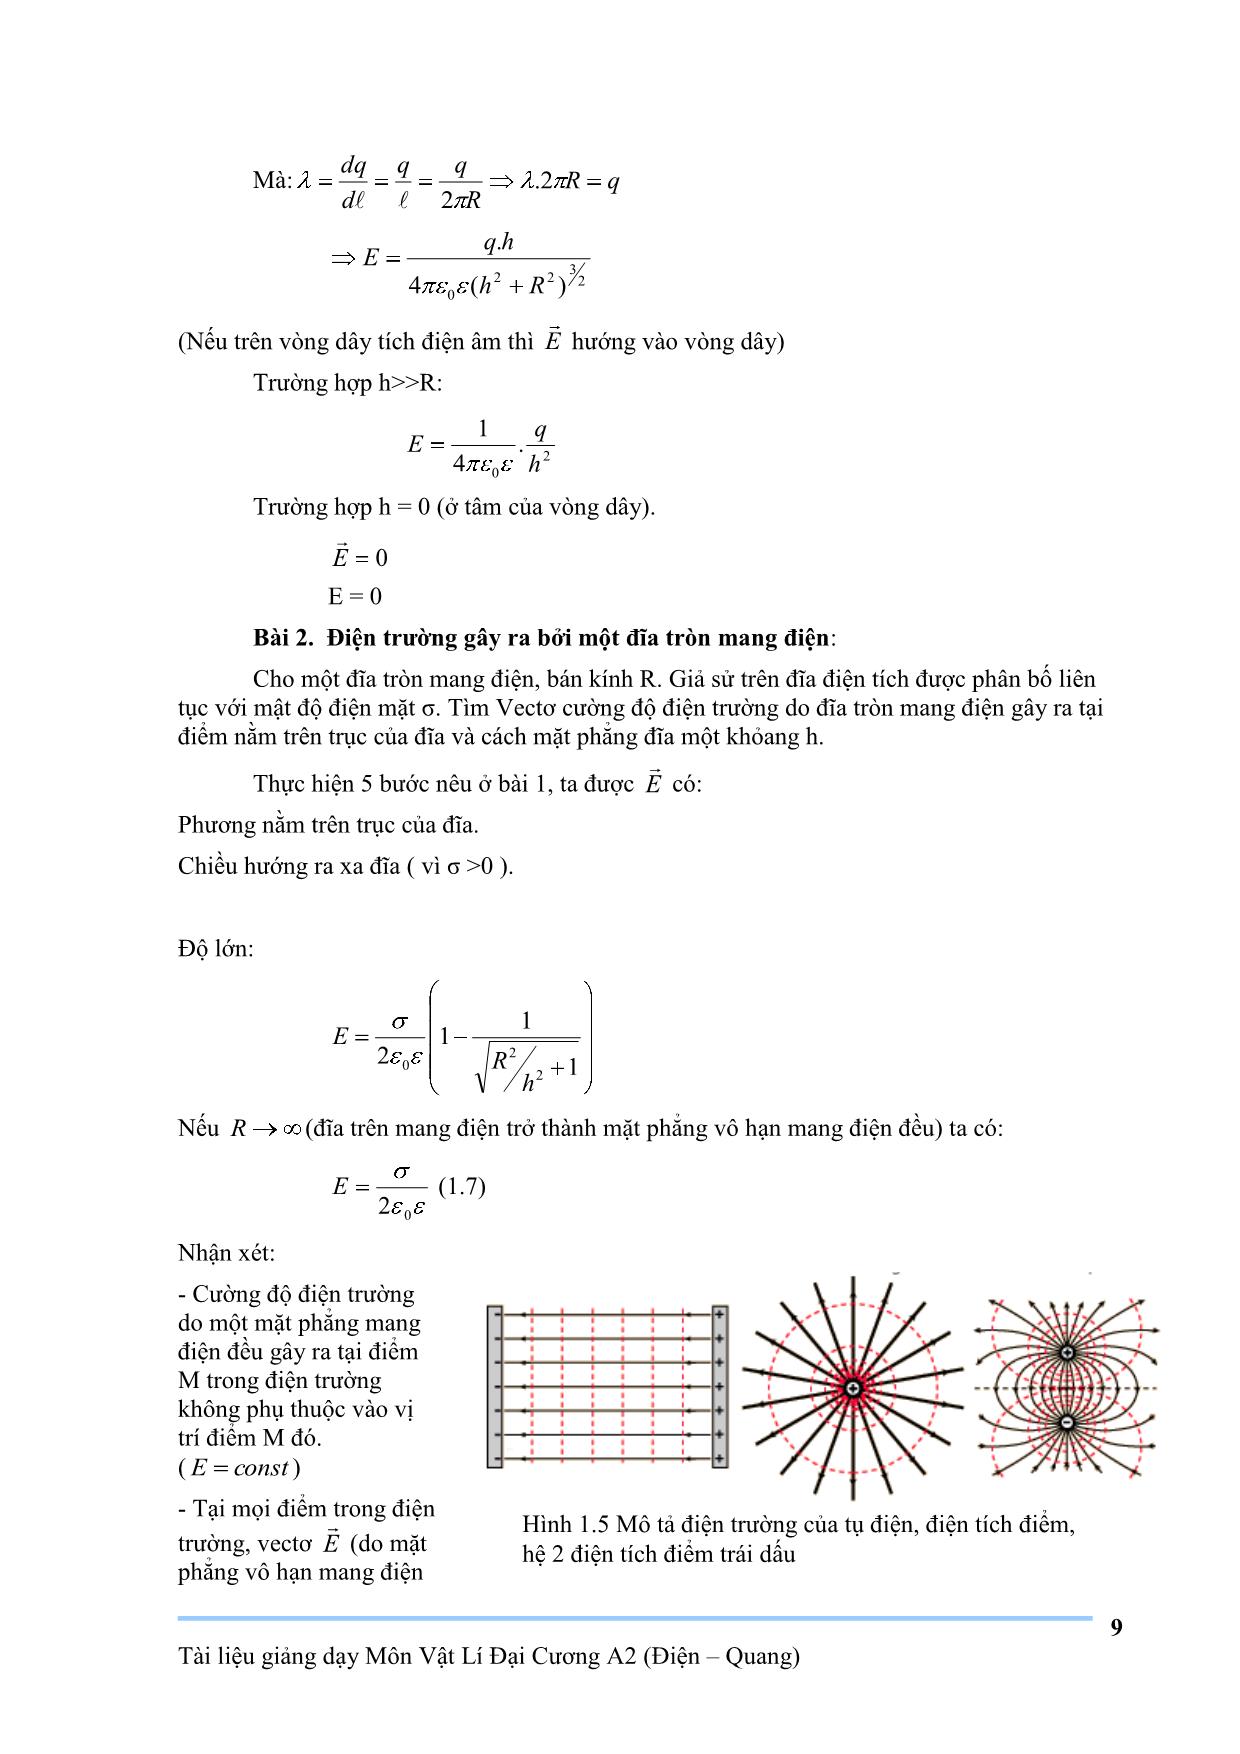 Giáo trình Vật lý đại cương A2 trang 9